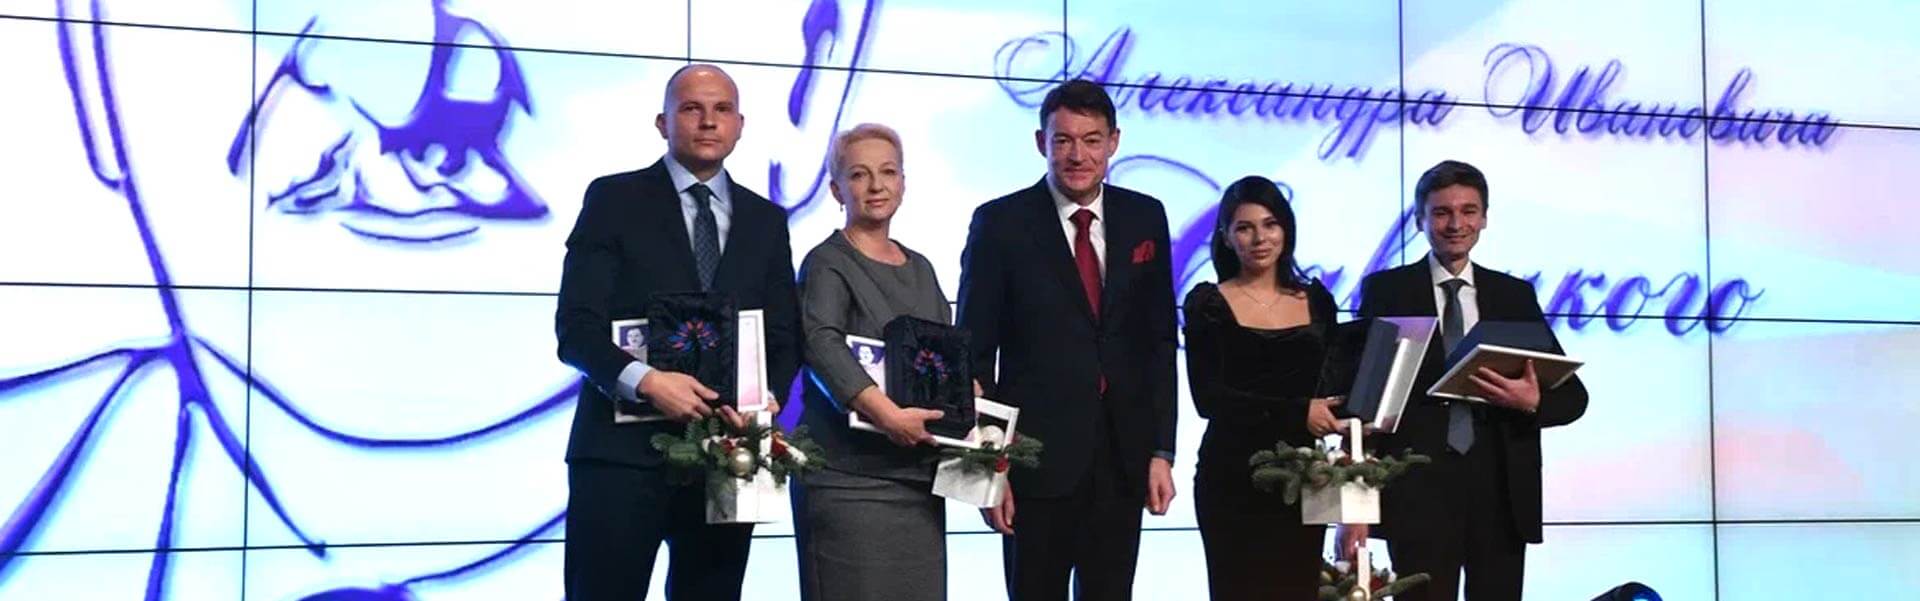 Впервые лучшие онкологи России отмечены почетной премией академика Савицкого